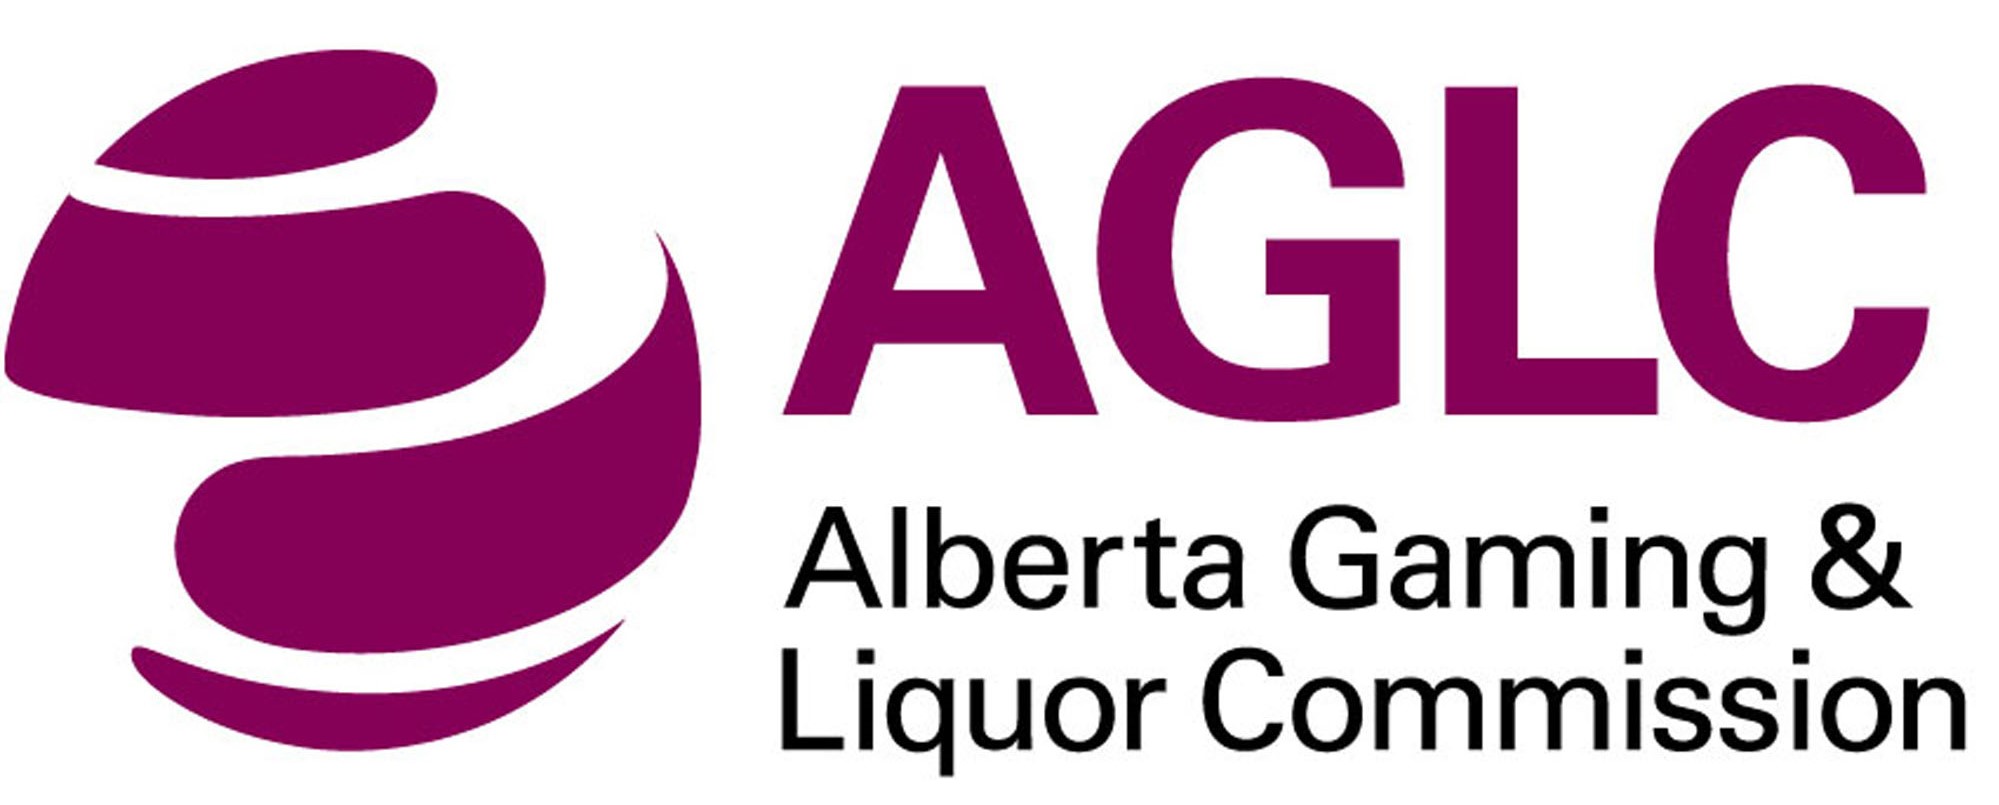 Alberta Gaming & Liquor Commission